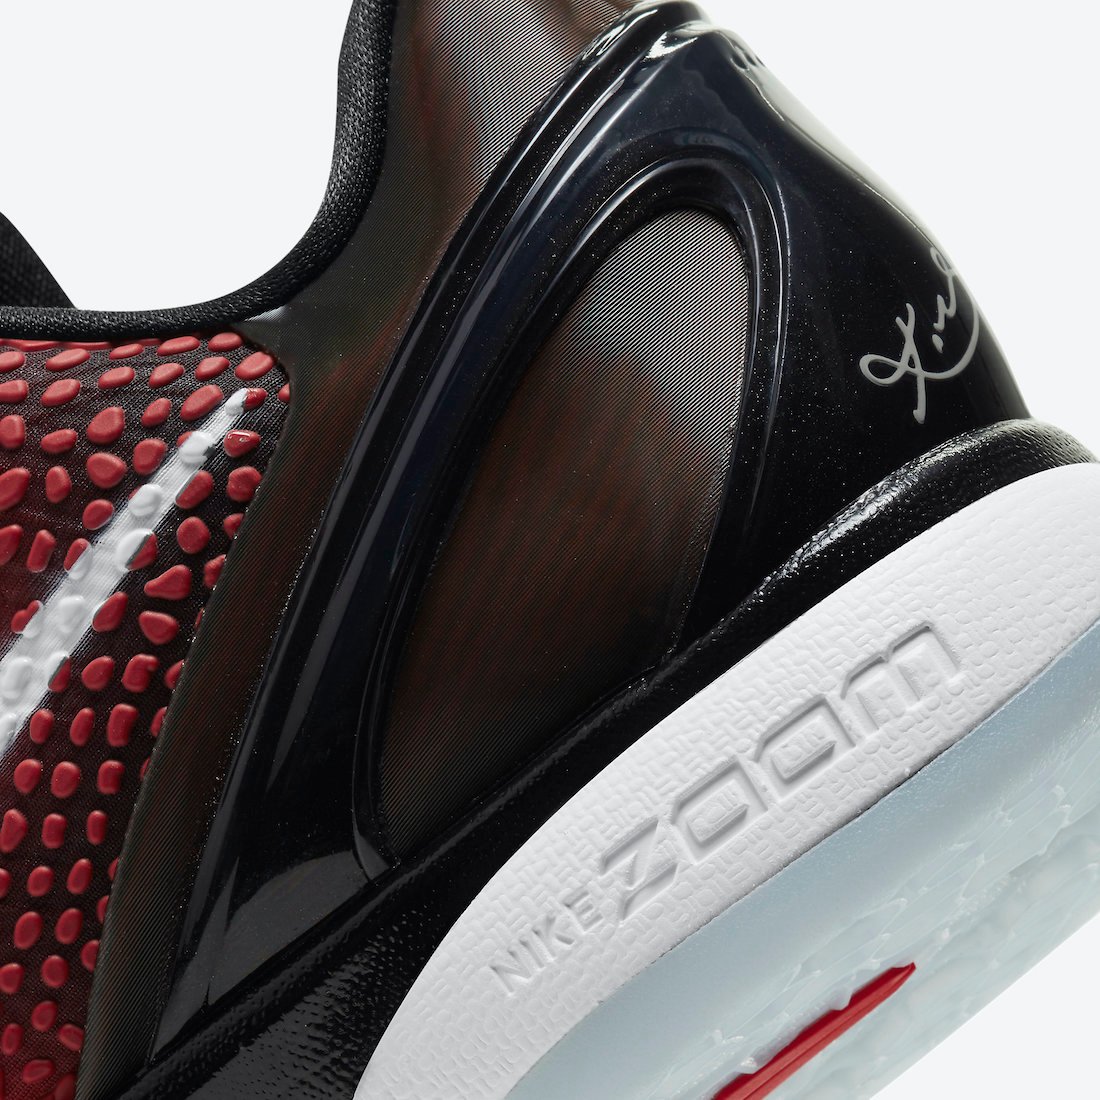 Nike Kobe 6 Protro All-Star DH9888-600 Release Price